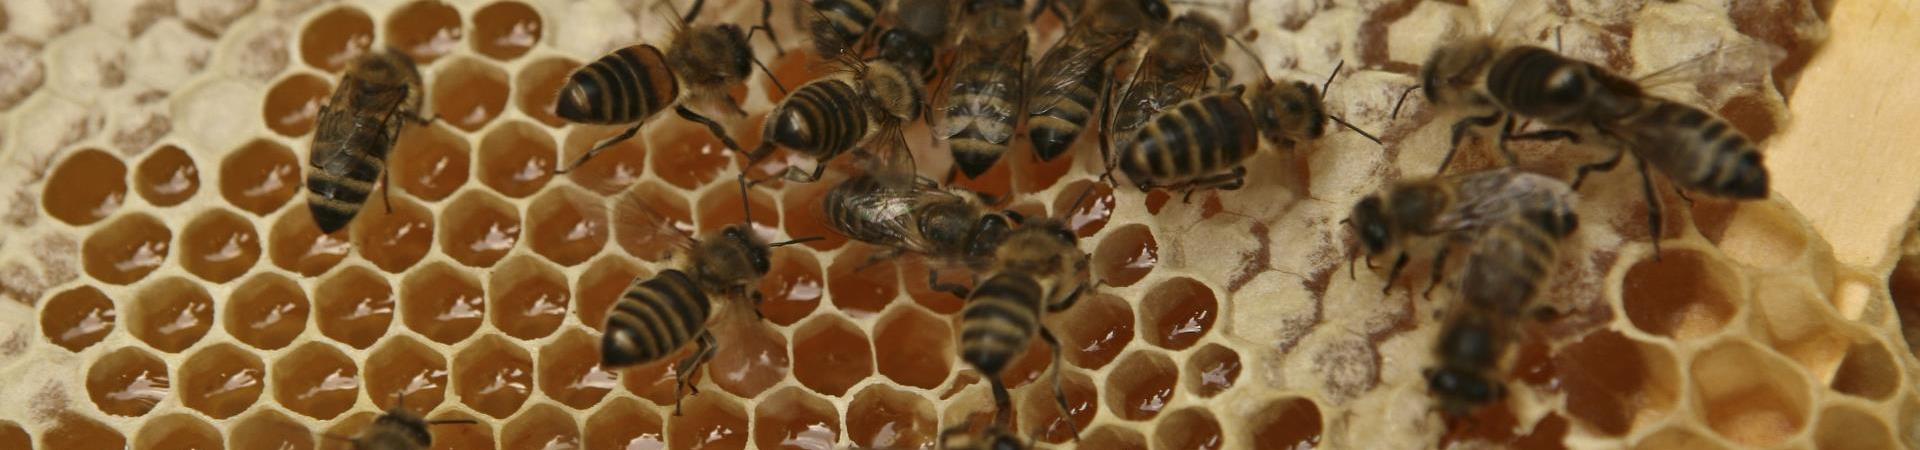 Bienen-Honig-Imkerei Pichler